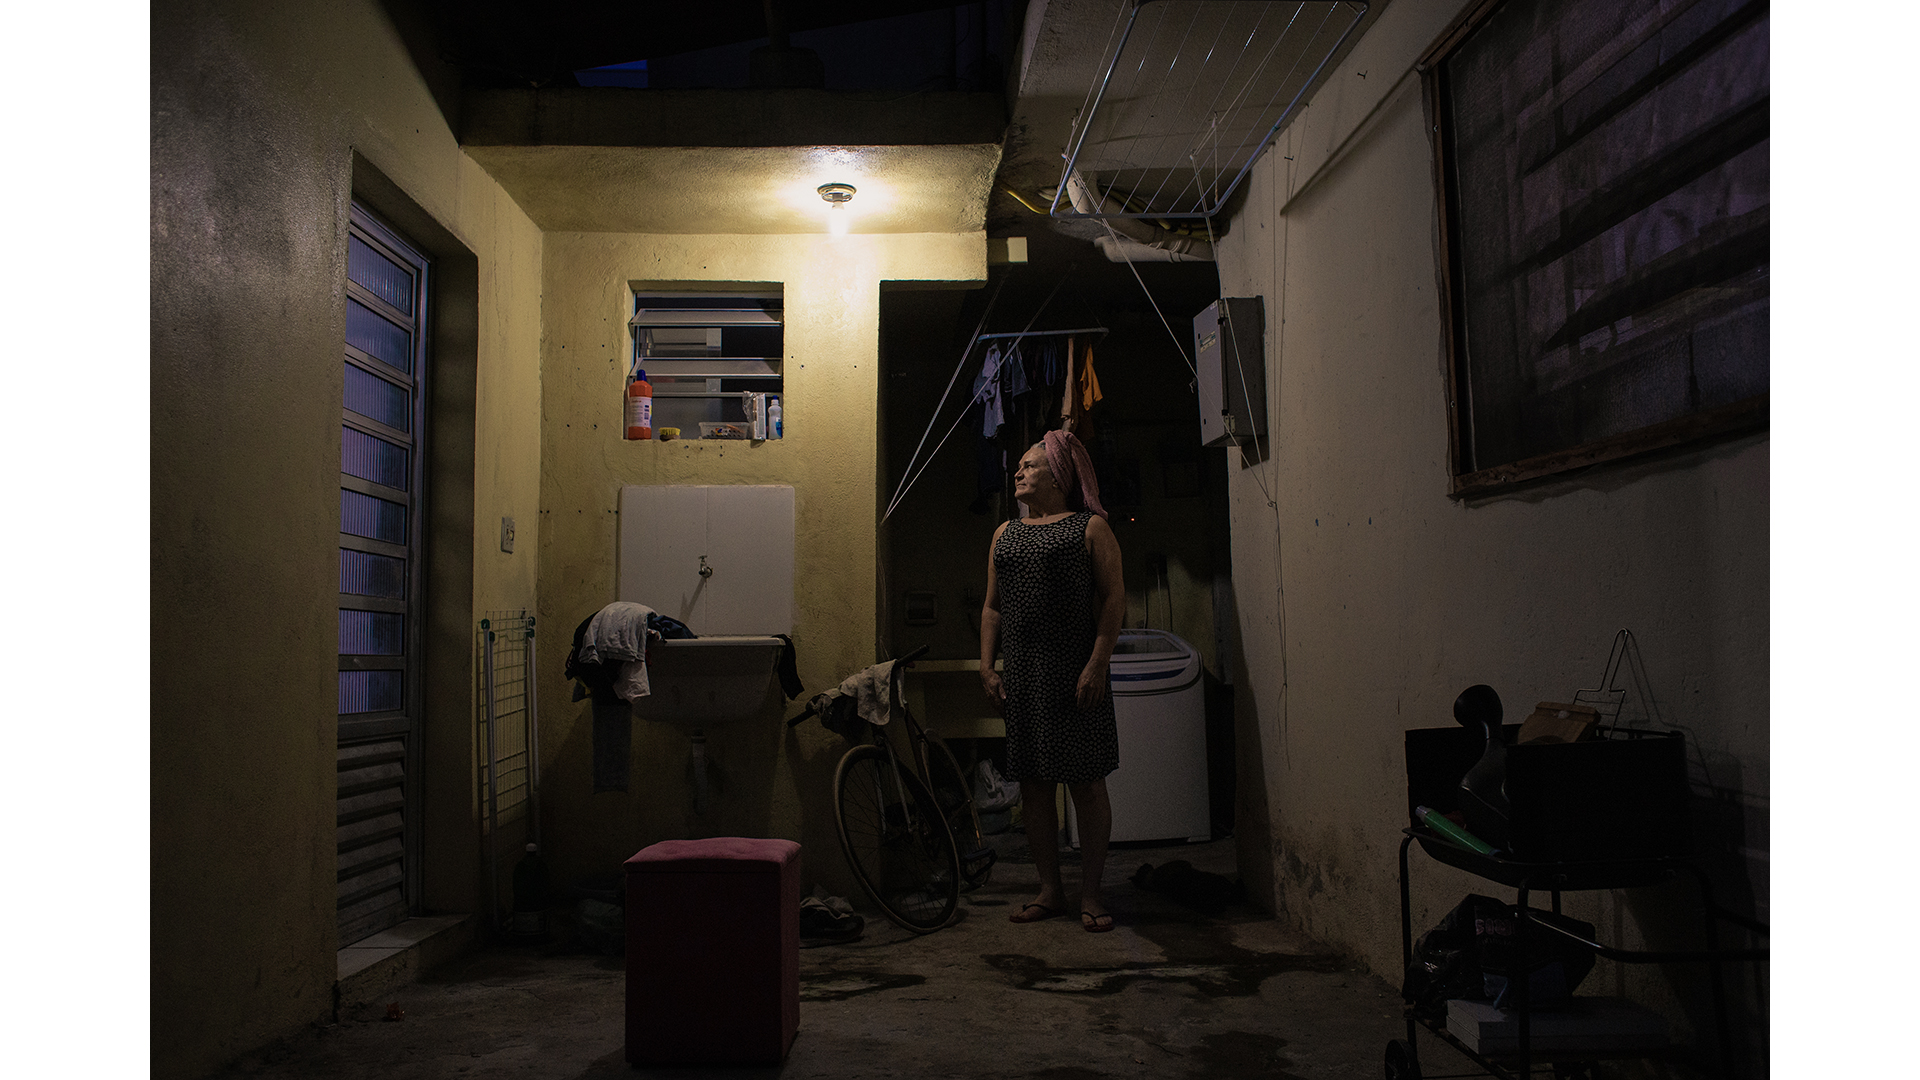 Camilla posa para retrato na área externa de sua casa, a qual é compartilhada com outros moradores, inclusive Murilo e Vitor, idealizadores do projeto Transgressoras.